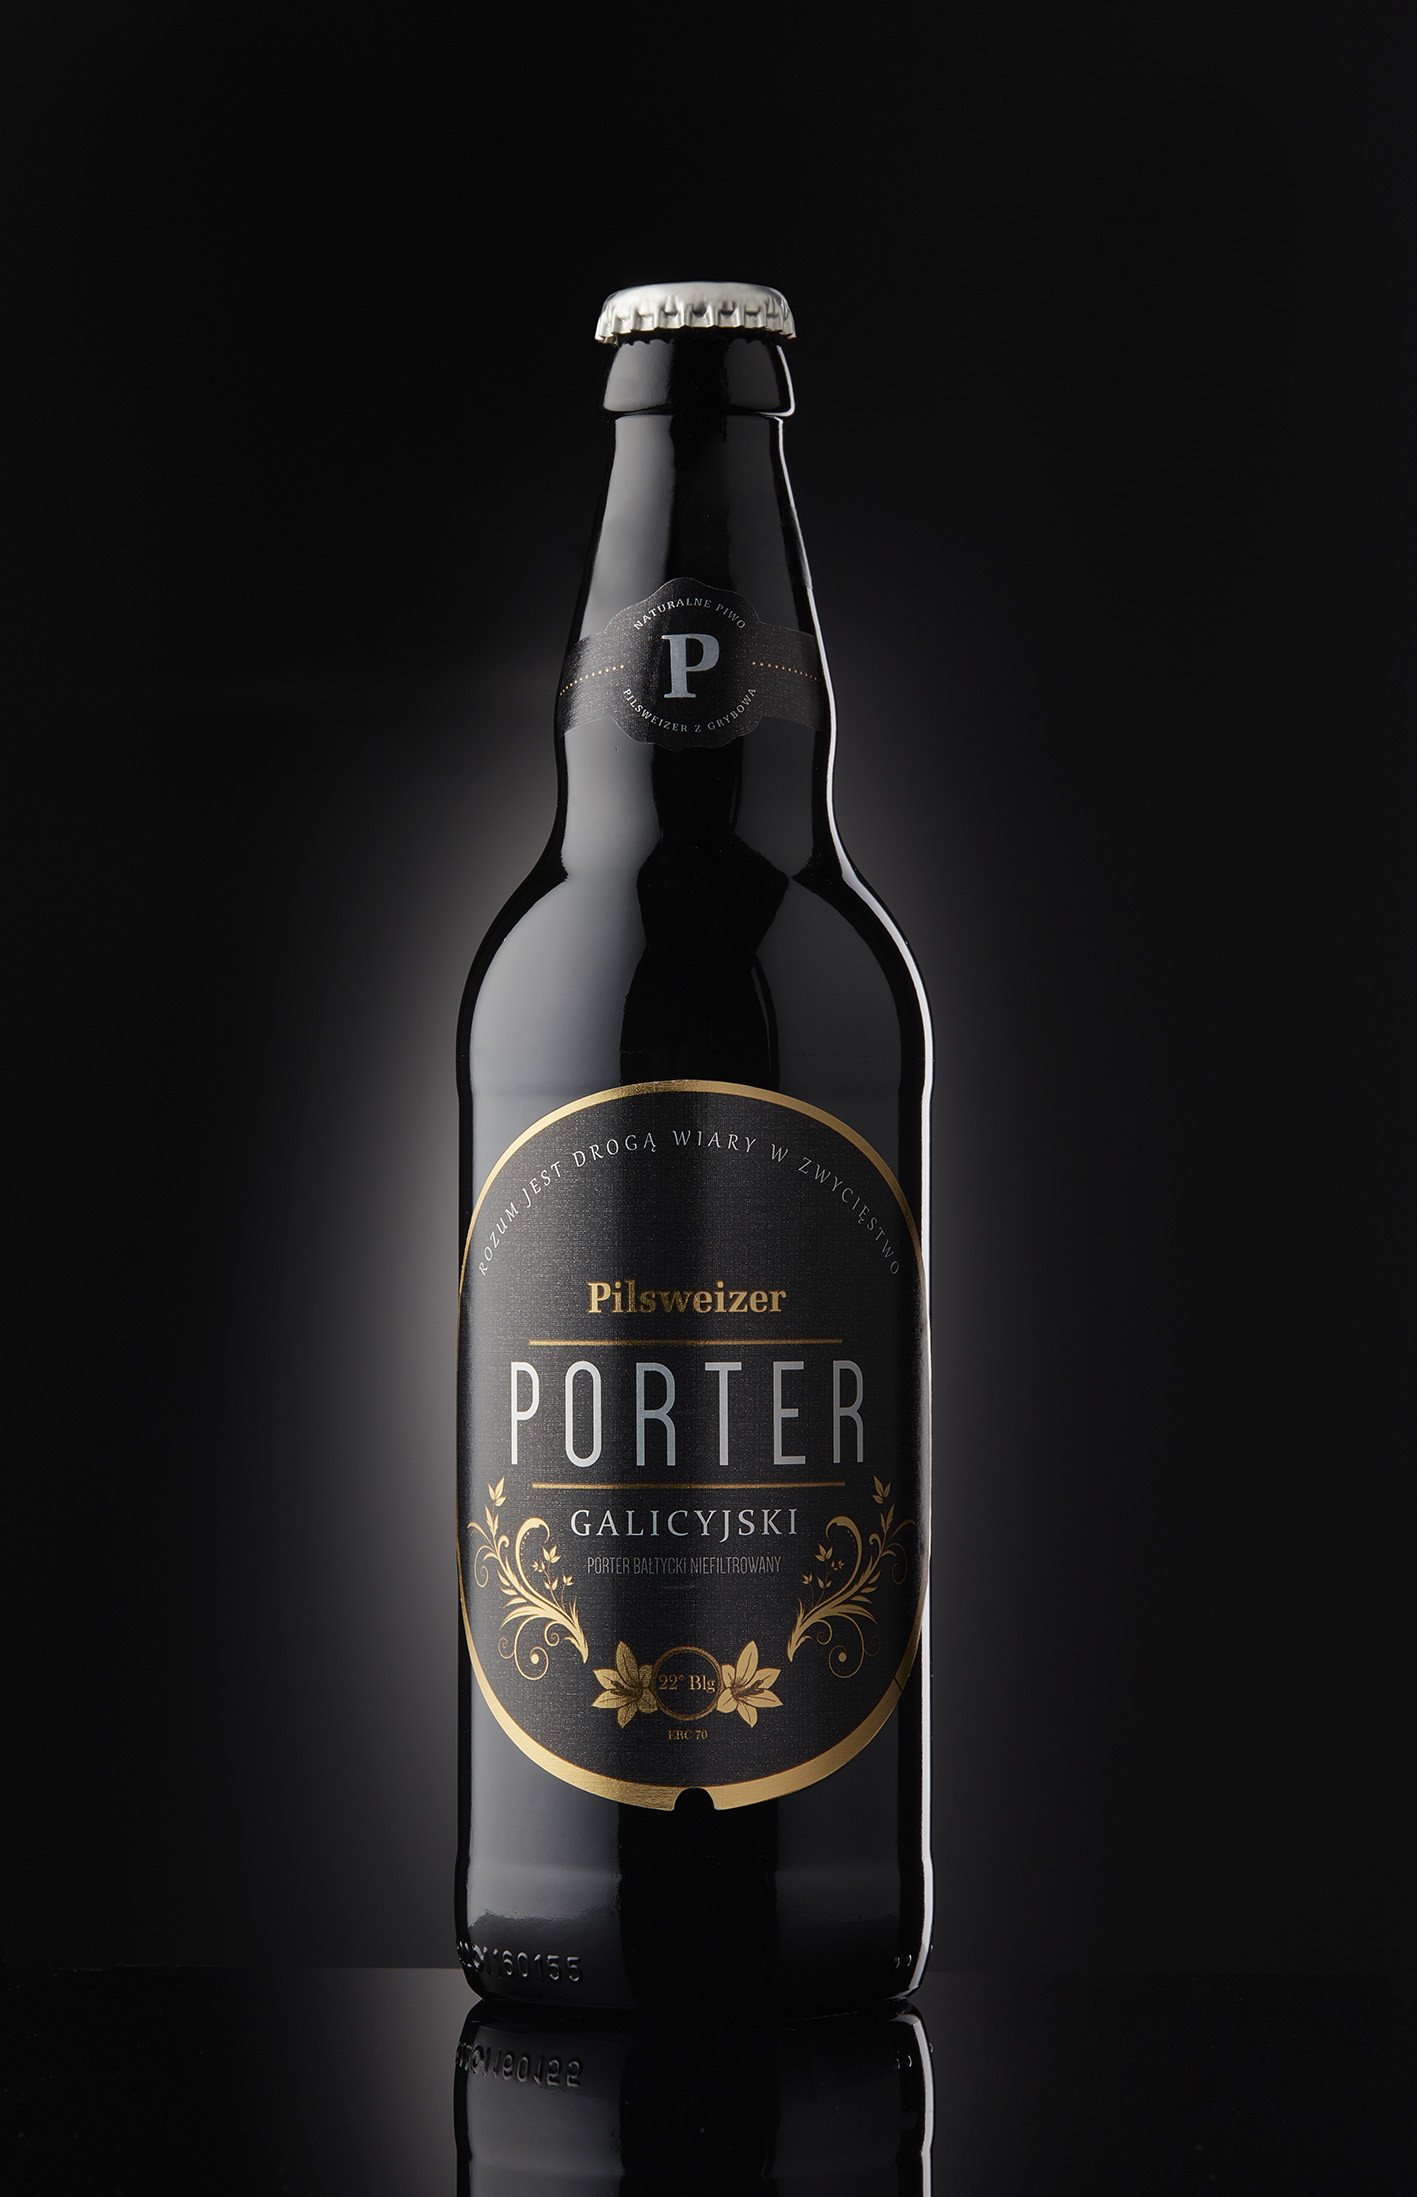 Butelka Portera Galicyjskiego (źródło: materiały prasowe O-I)